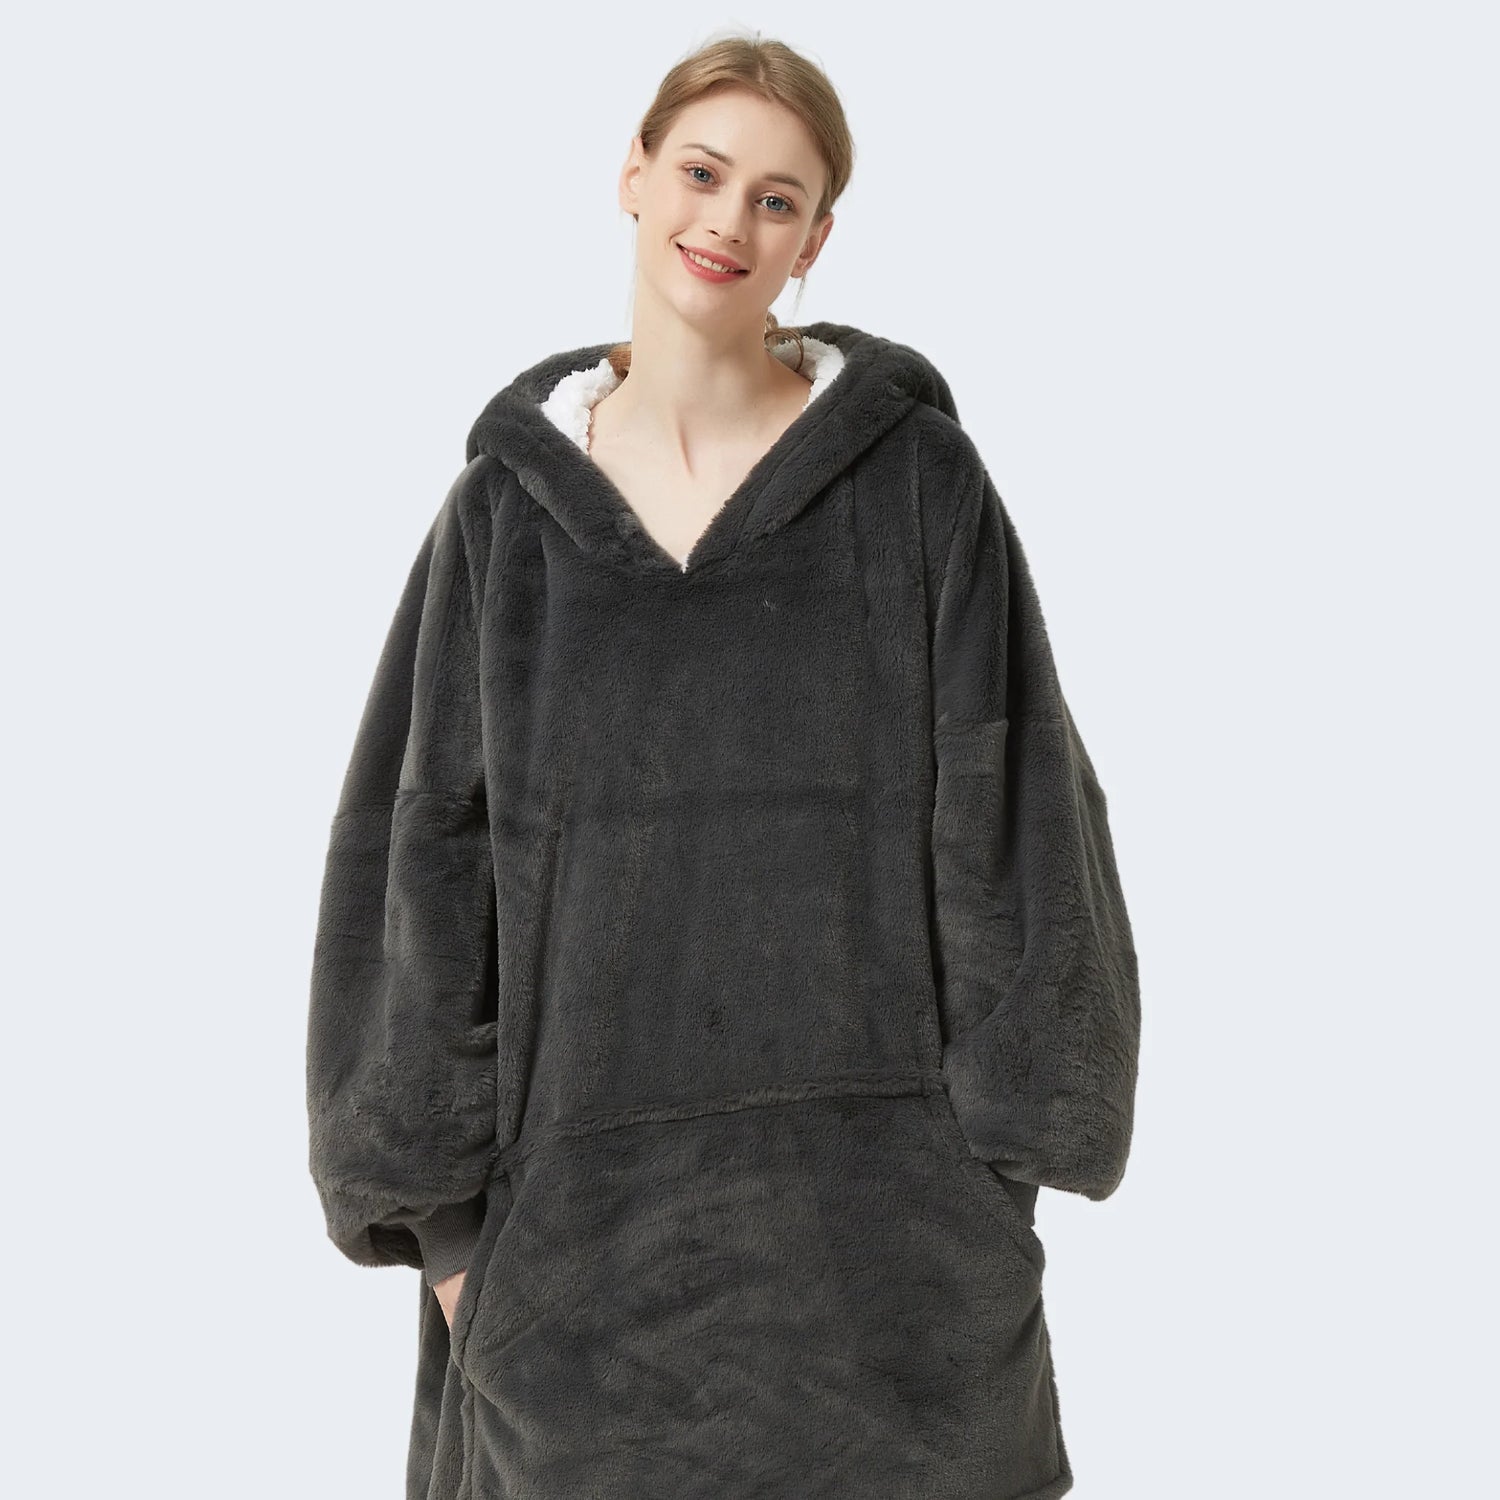 Couverture à capuche surdimensionnée avec manches Sweatshirt Plaid Hiver  Polaire Hoody Femmes Pocket Femme Sweat à capuche Femme Noël